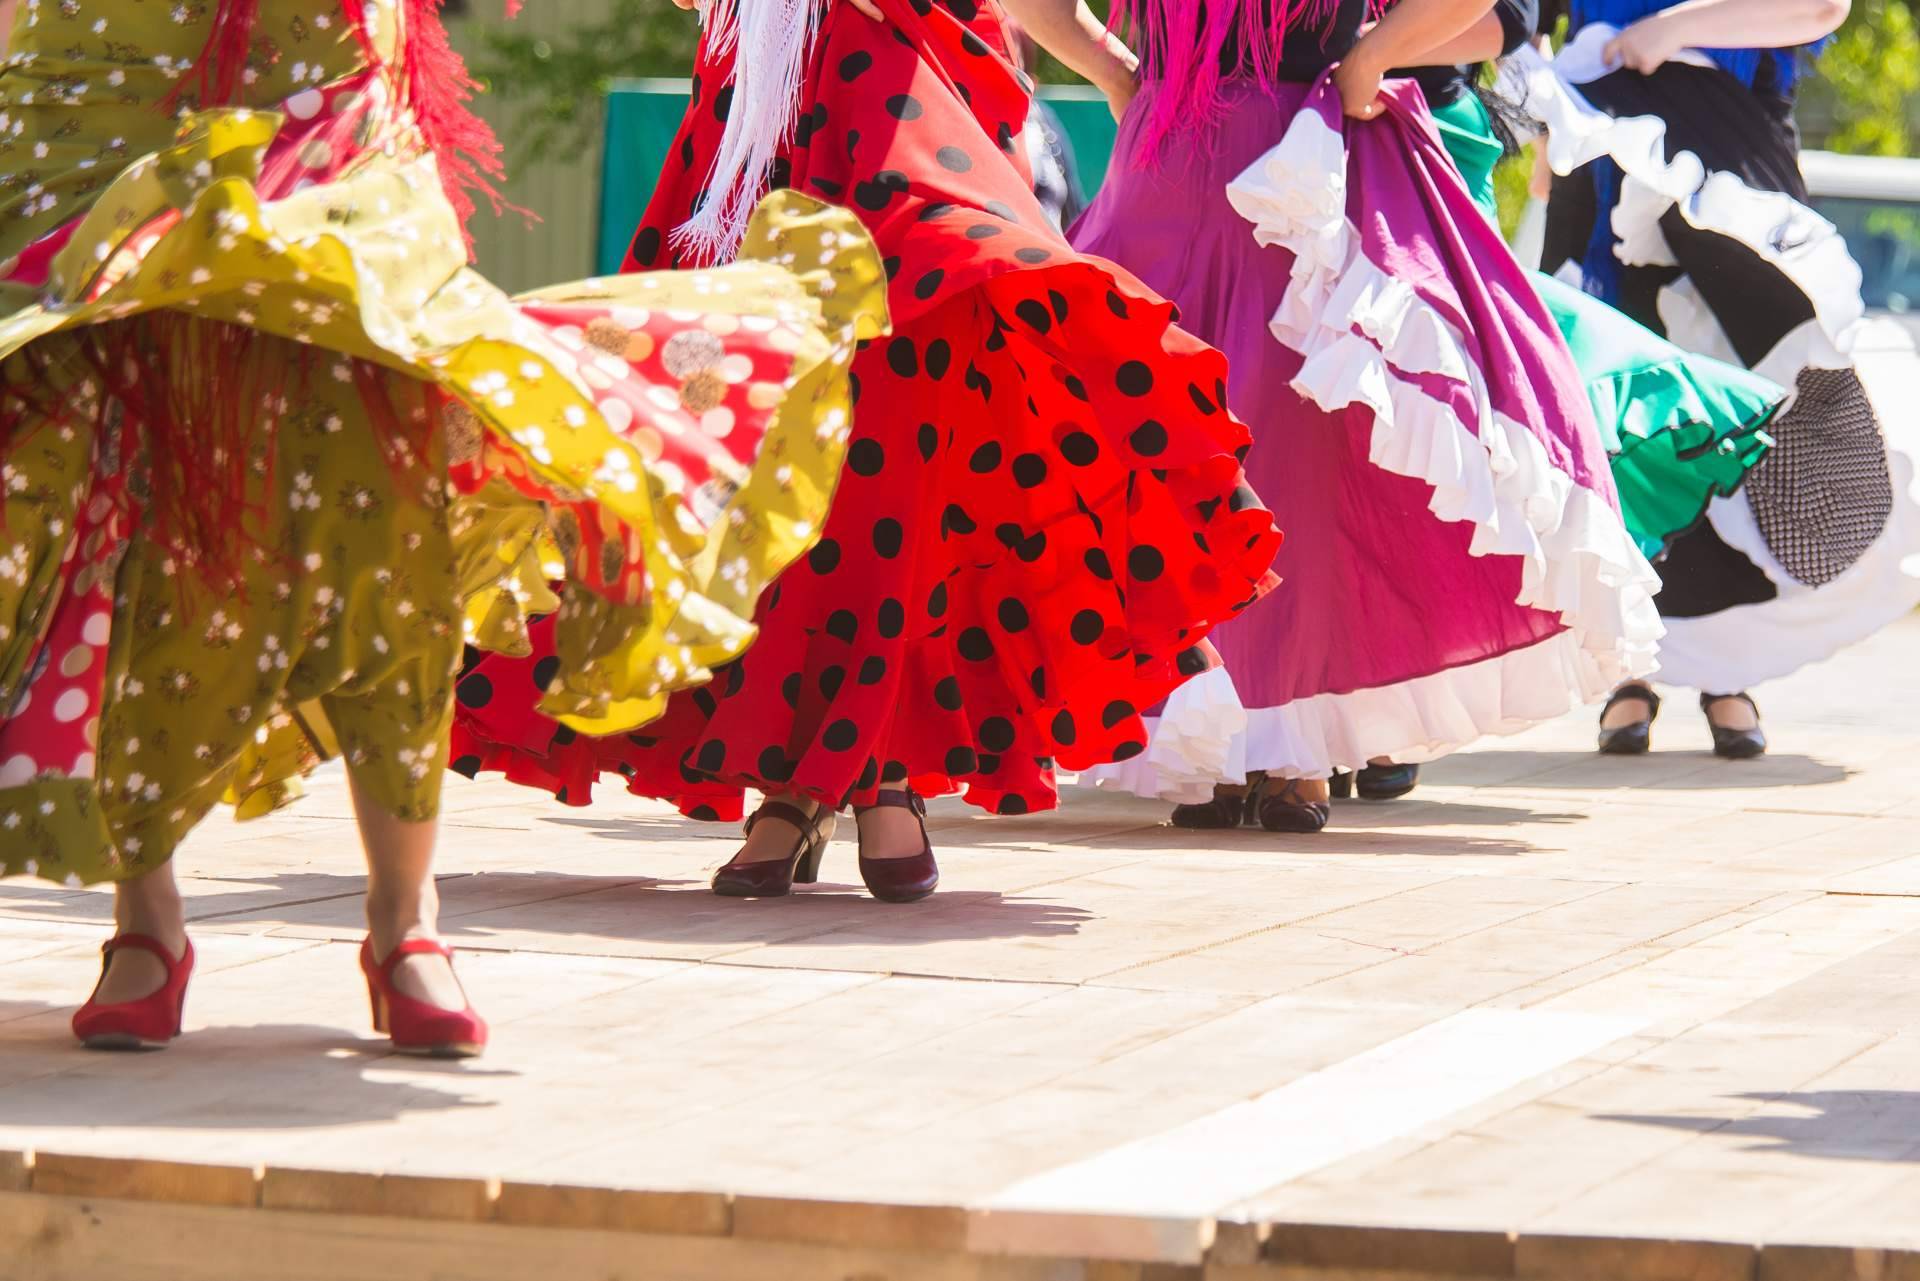 Viva La Feria - Compra Online Trajes De Flamenca y Moda Flamenca